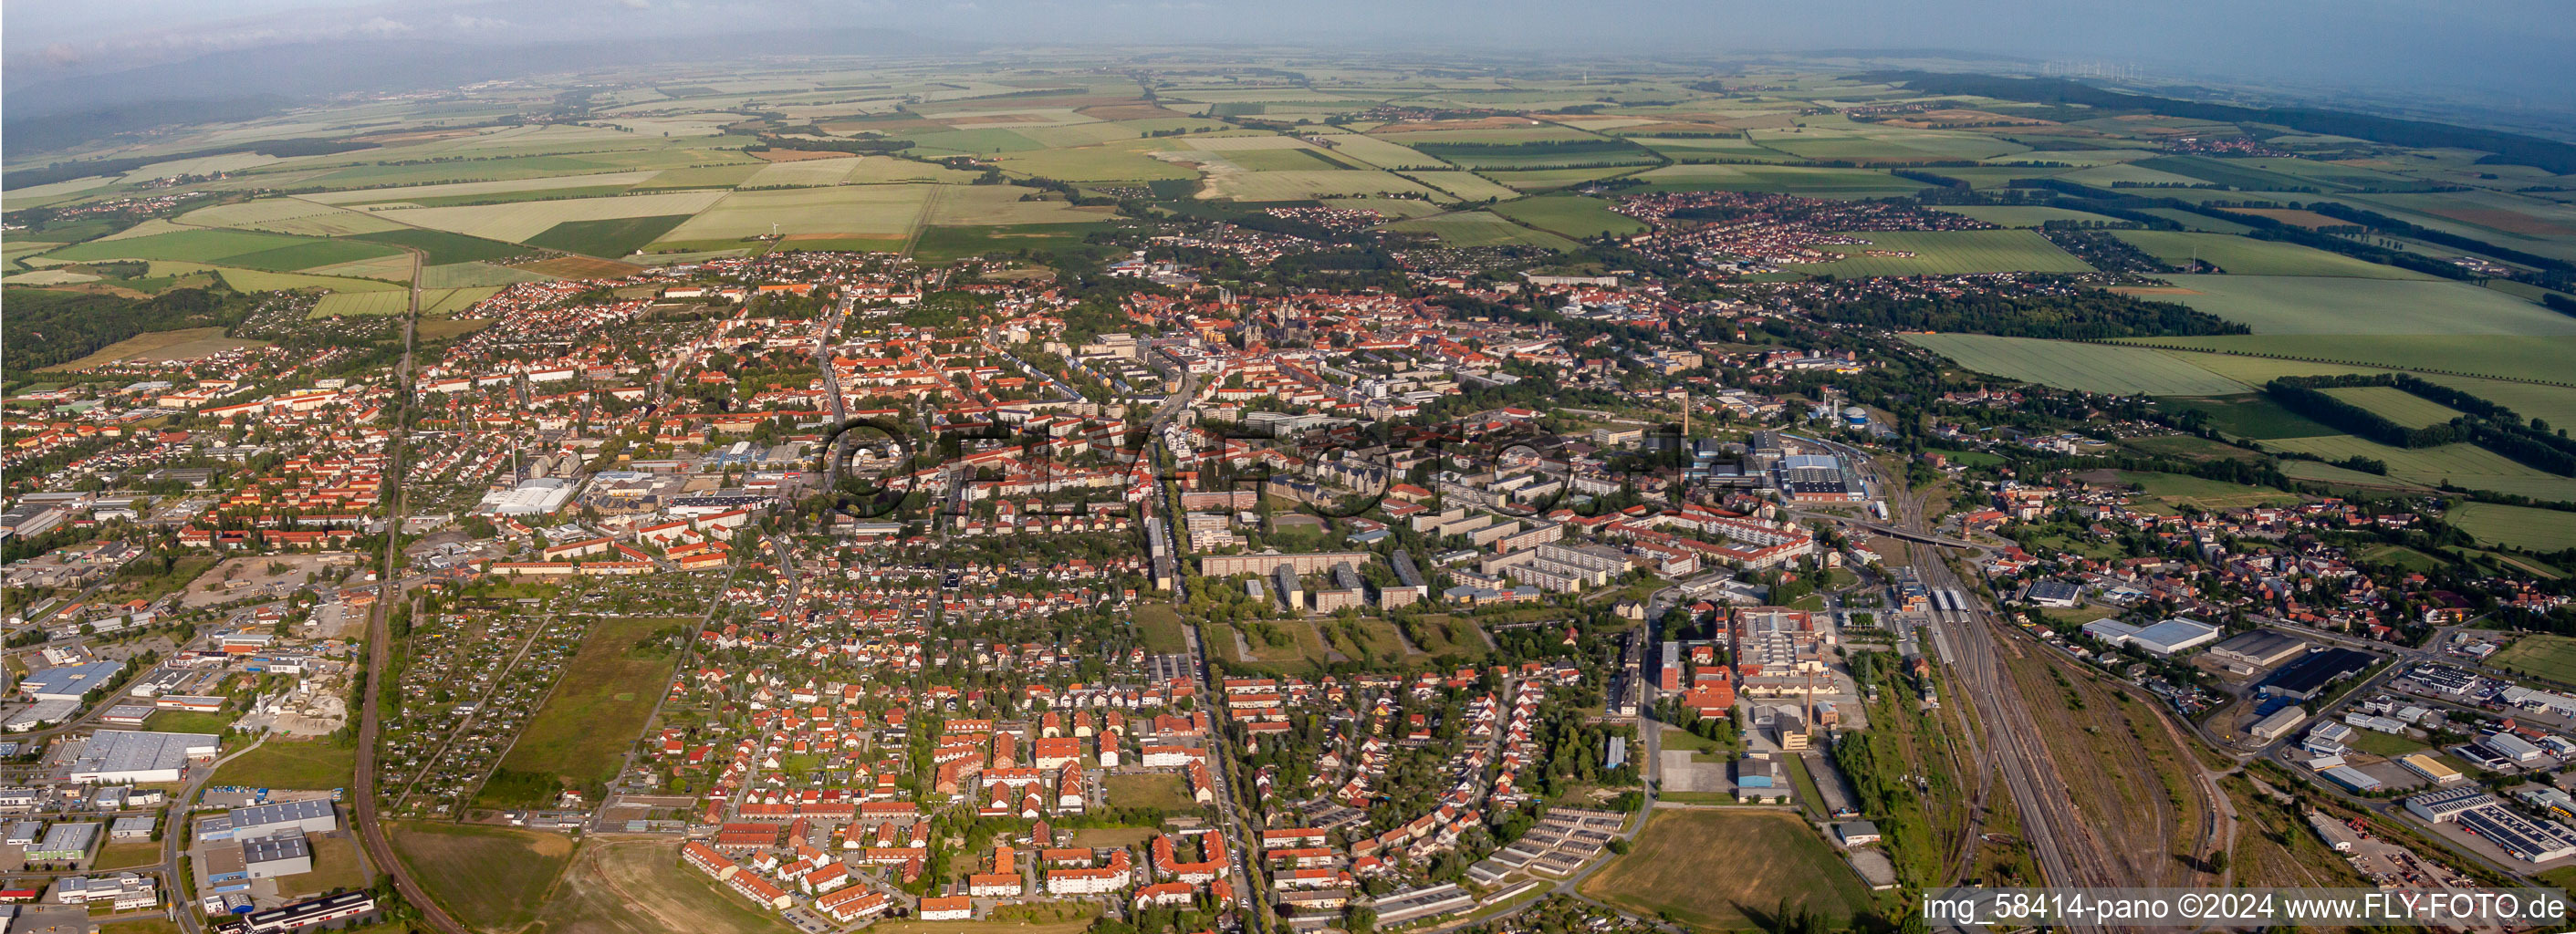 Panorama - Perspektive von Stadtgebiet mit Außenbezirken und Innenstadtbereich in Halberstadt im Bundesland Sachsen-Anhalt, Deutschland